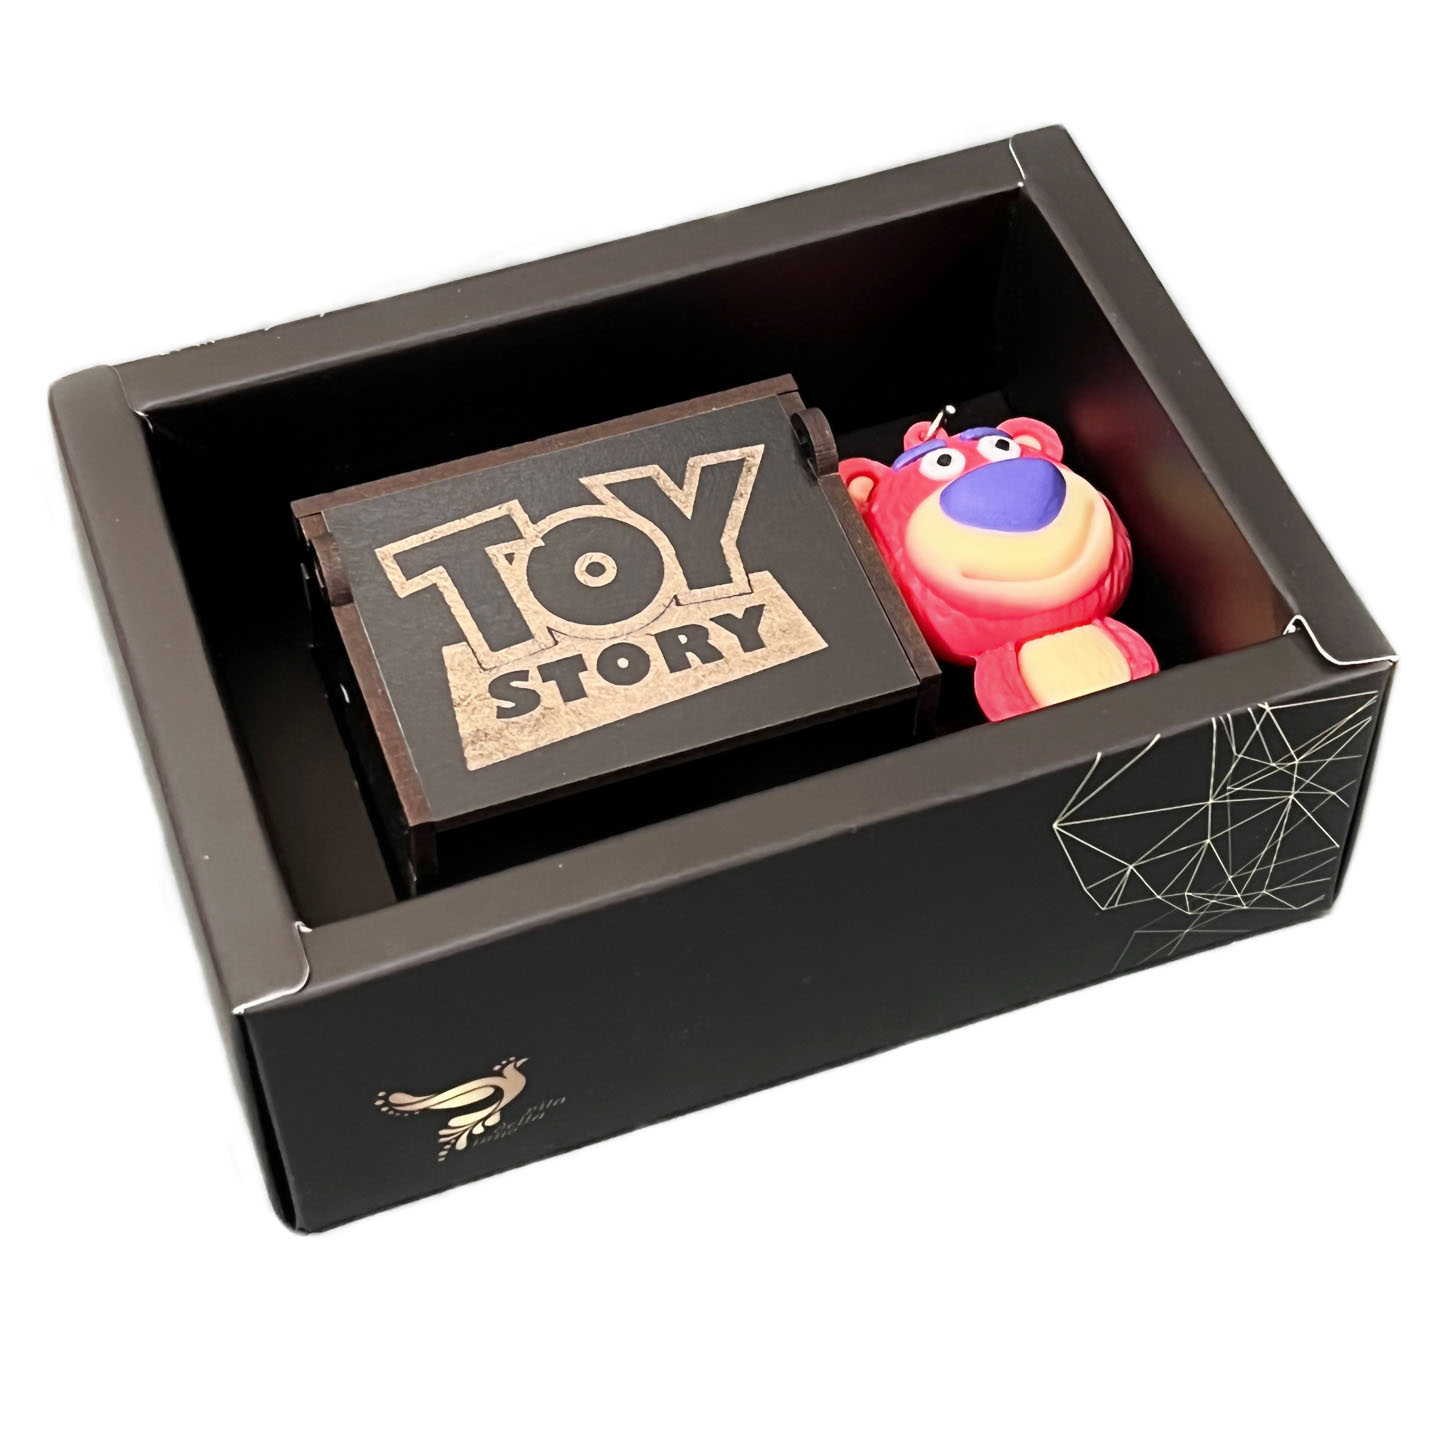 جعبه موزیکال اینو دلا ویتا طرح داستان اسباب بازی مدل Toy story Lotso